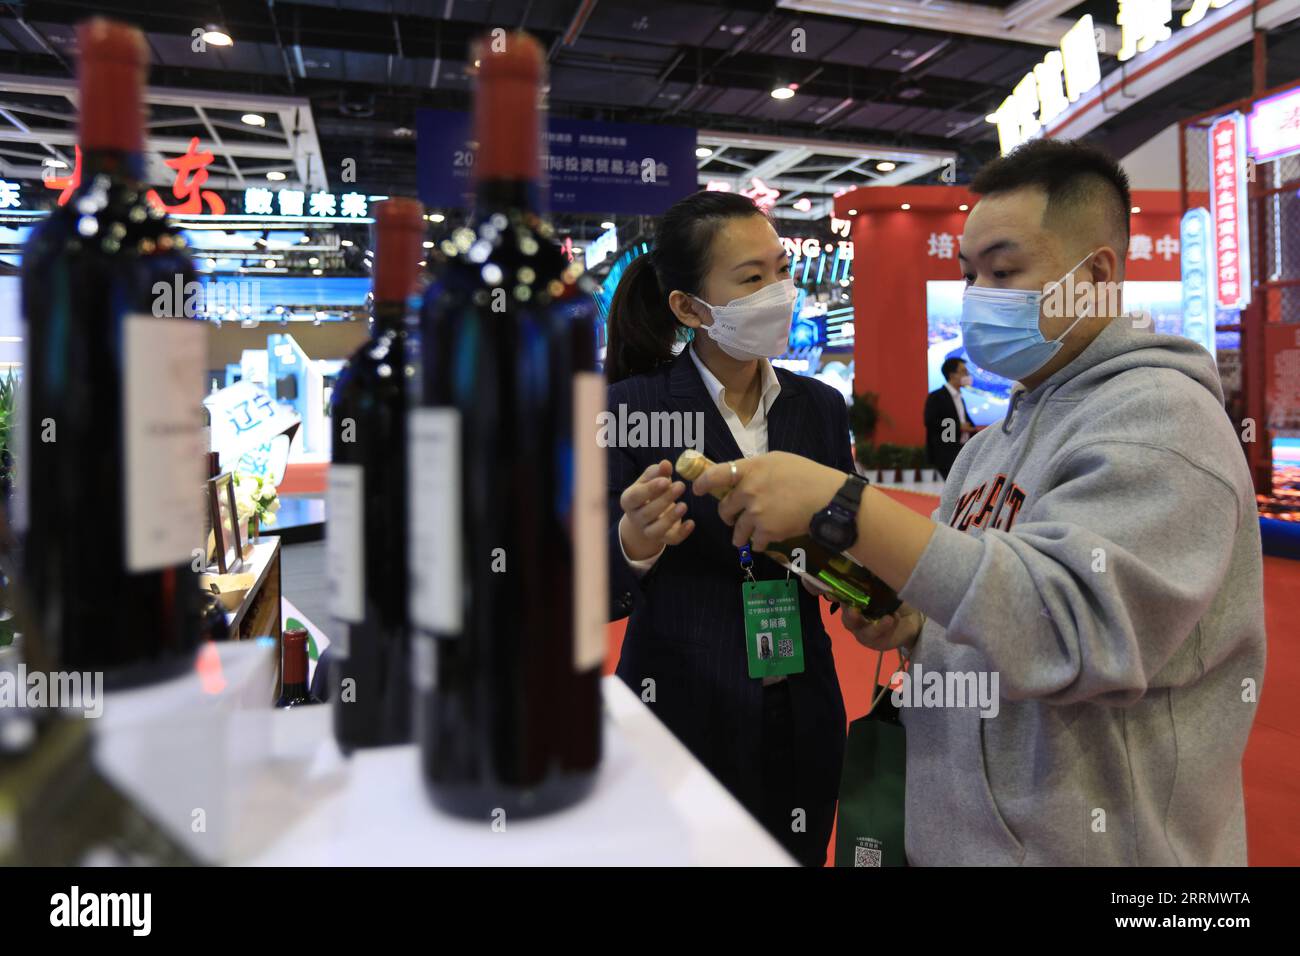 221118 -- SHENYANG, le 18 novembre 2022 -- Un visiteur regarde une bouteille de vin pendant qu'un exposant élabore lors d'une exposition lors de la Foire internationale de l'investissement et du commerce du Liaoning 2022 à Shenyang, dans la province du Liaoning du nord-est de la Chine, le 18 novembre 2022. La Foire internationale de l'investissement et du commerce Liaoning 2022 a débuté vendredi. Thématique Extend Opening-up Channel, Share Green Development, la foire vise à promouvoir les réalisations de revitalisation et de développement du Liaoning, et à stimuler la coopération économique et commerciale entre la province et les autres parties. CHINE-LIAONING-SHENYANG-INVE Banque D'Images